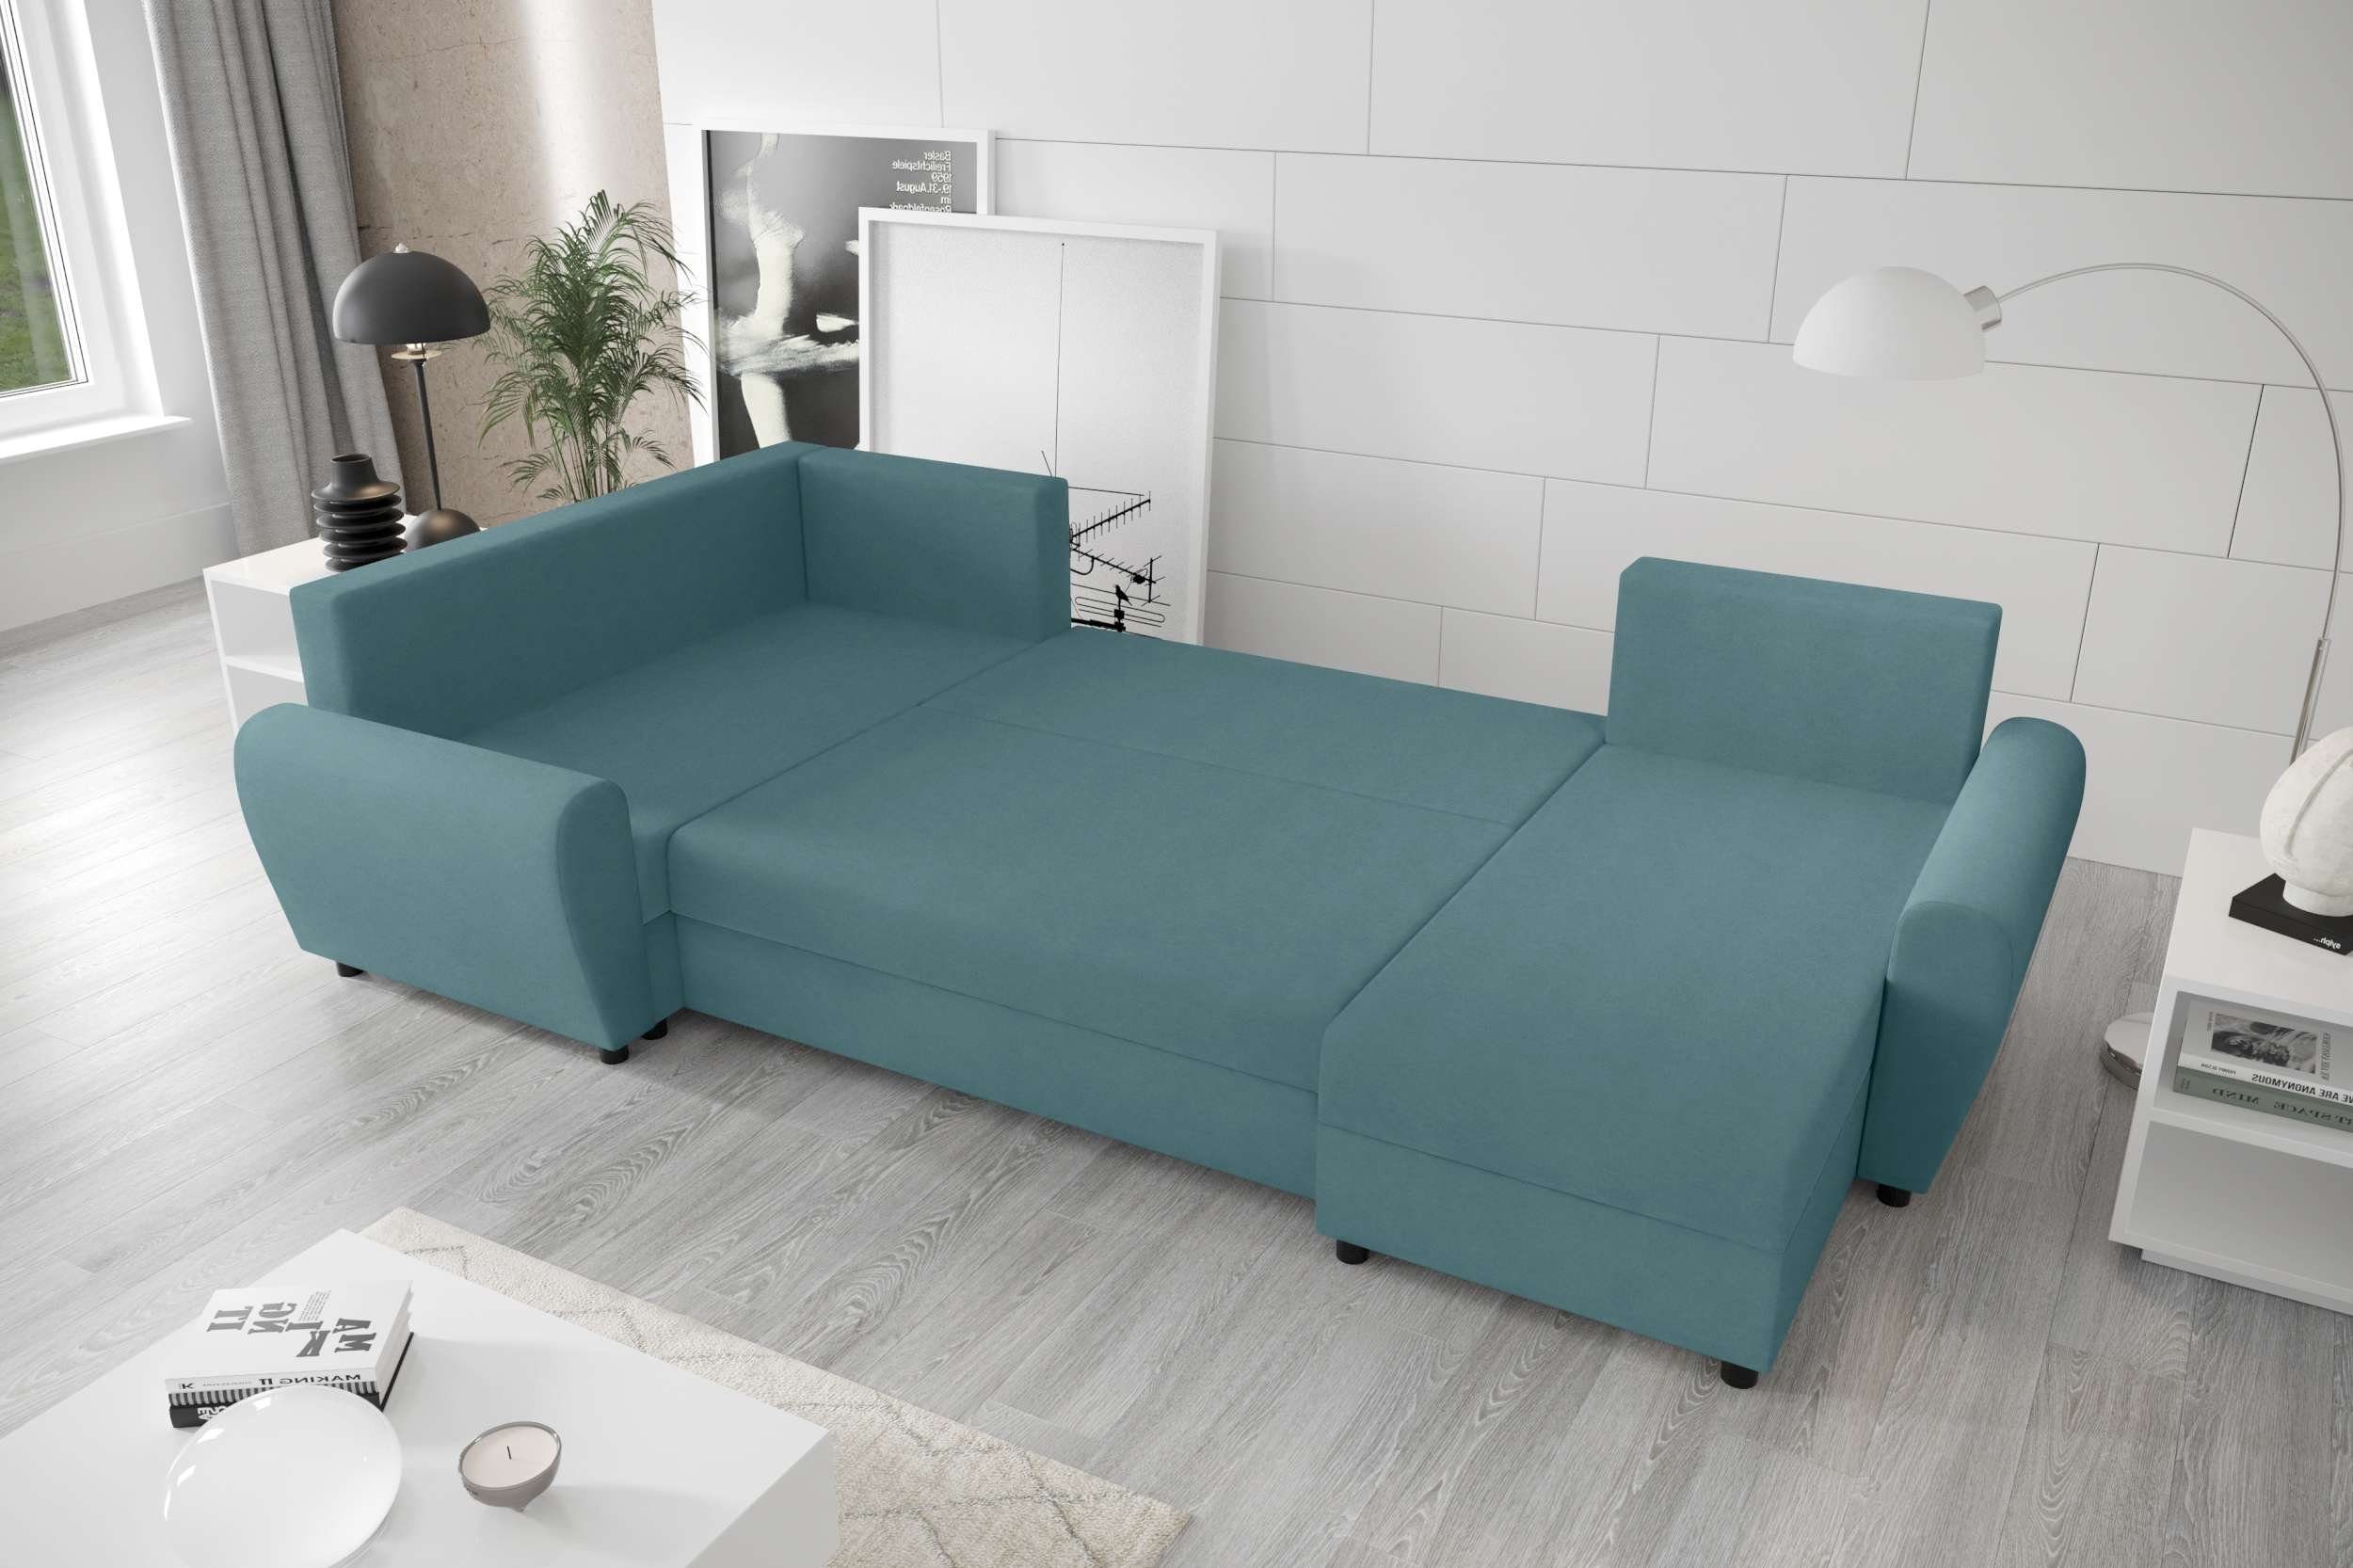 mit Wohnlandschaft mit Bettkasten, Modern Stylefy Sitzkomfort, Design Sofa, Eckcouch, Bettfunktion, U-Form, Haven,